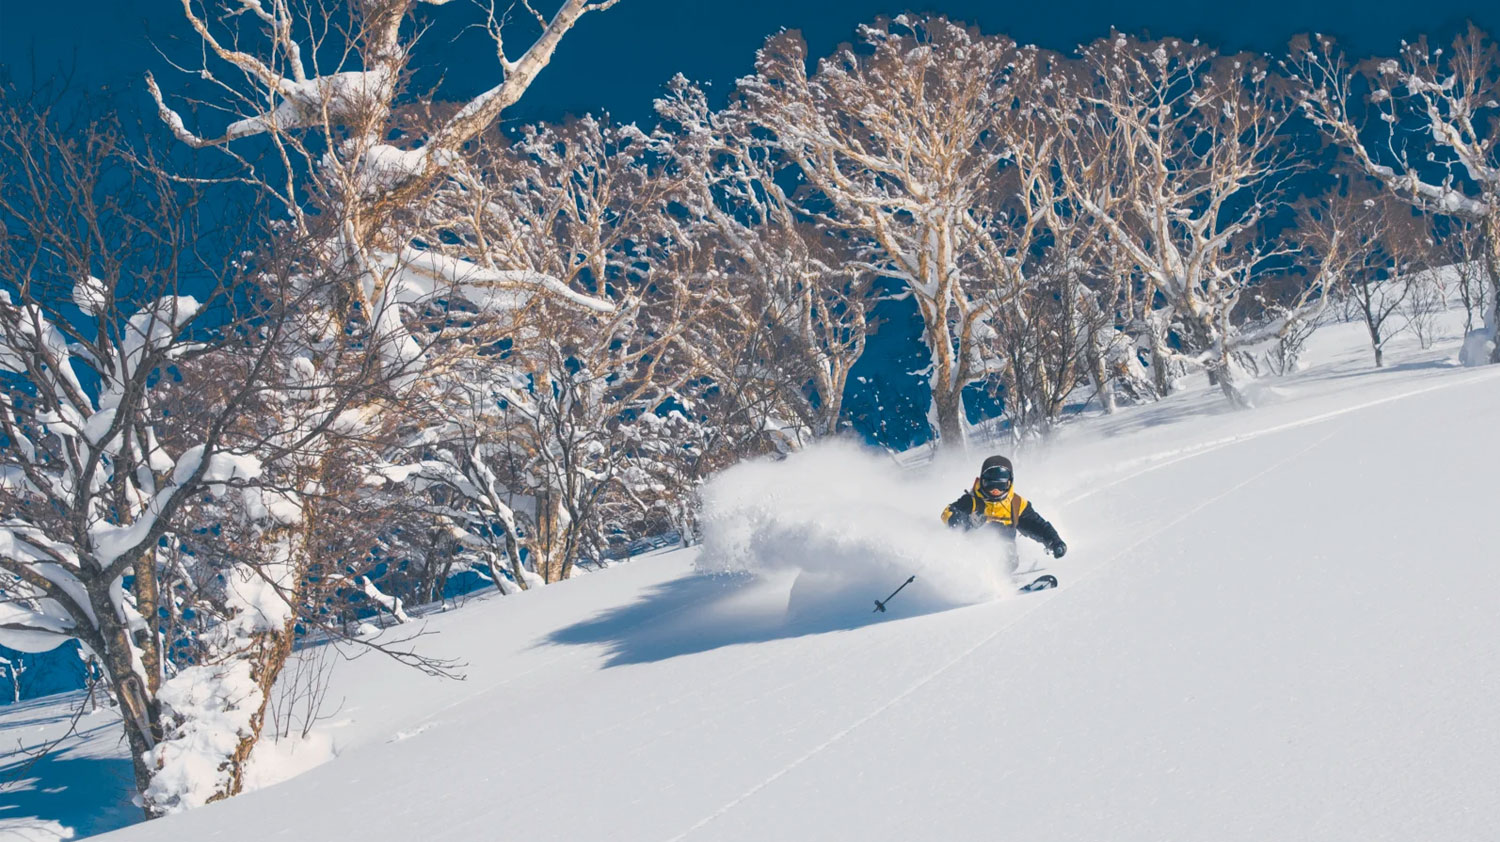 Best ski resorts in Japan for powder